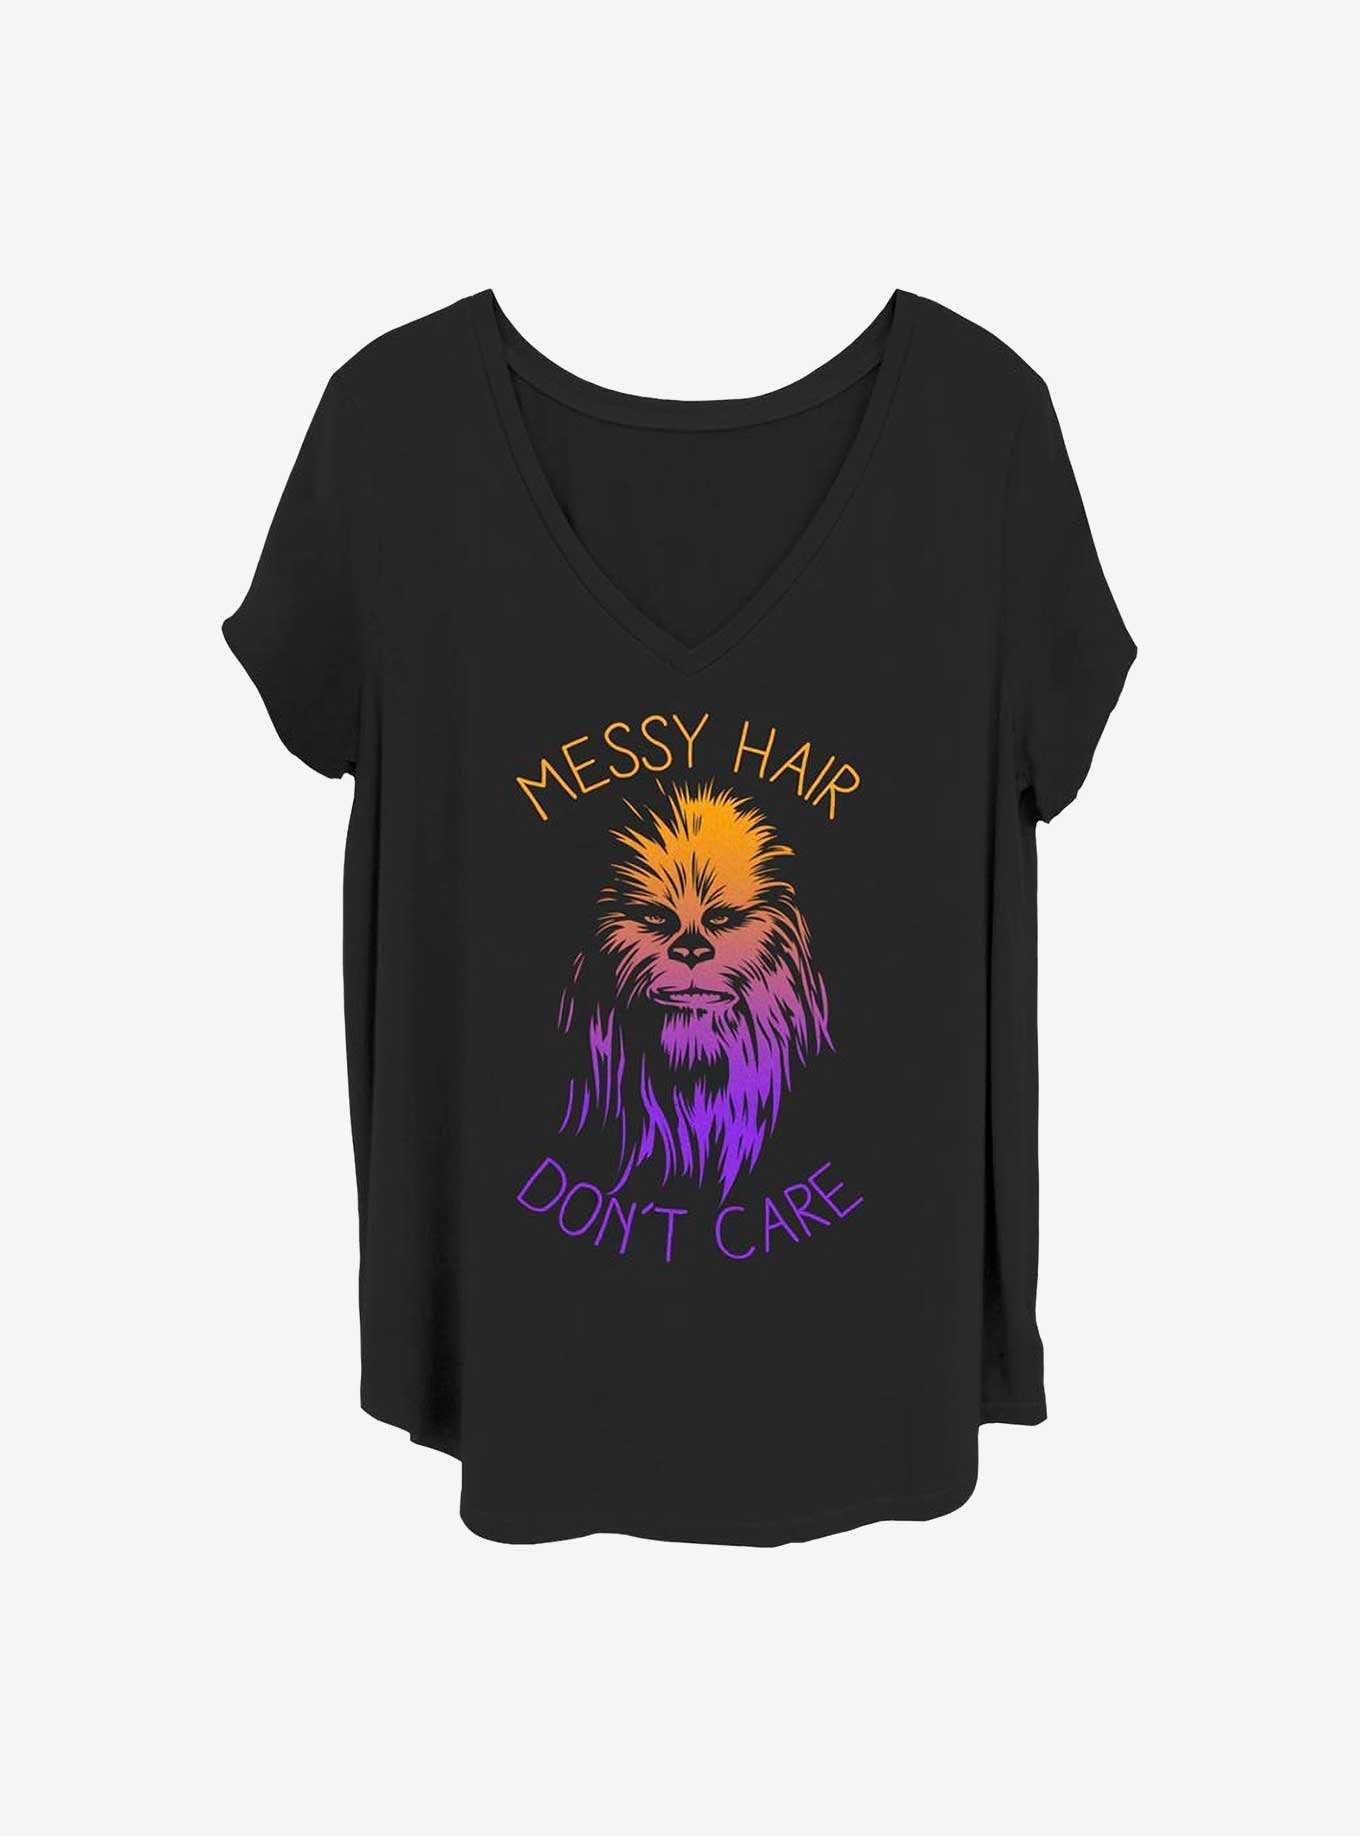 Star Wars Messy Hairs Girls T-Shirt Plus Size, , hi-res